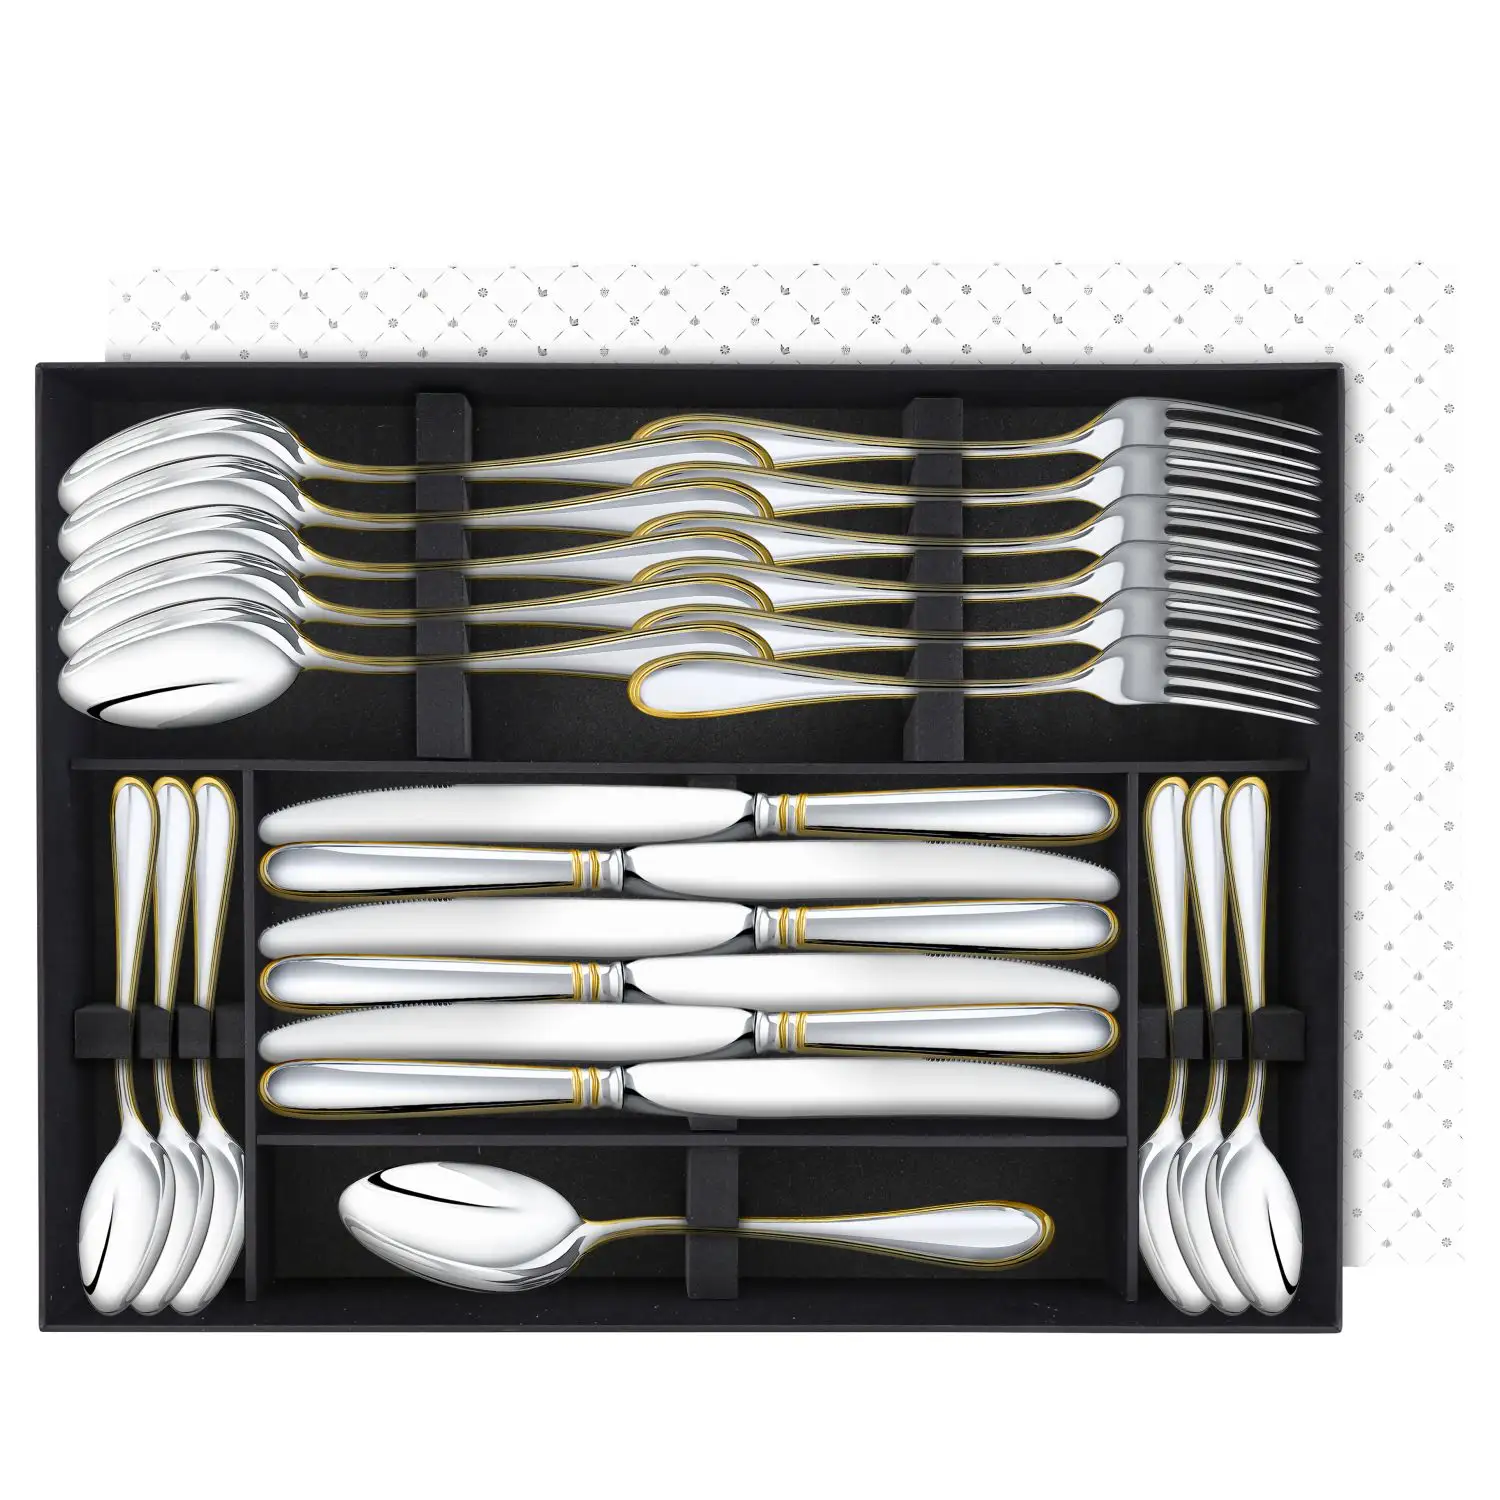 Набор столовый Капелька: вилка, ложка, нож, чайная ложка посеребренный с позолотой, на 6 персон набор столовый пламя вилка ложка нож чайная ложка посеребренный с позолотой на 6 персон